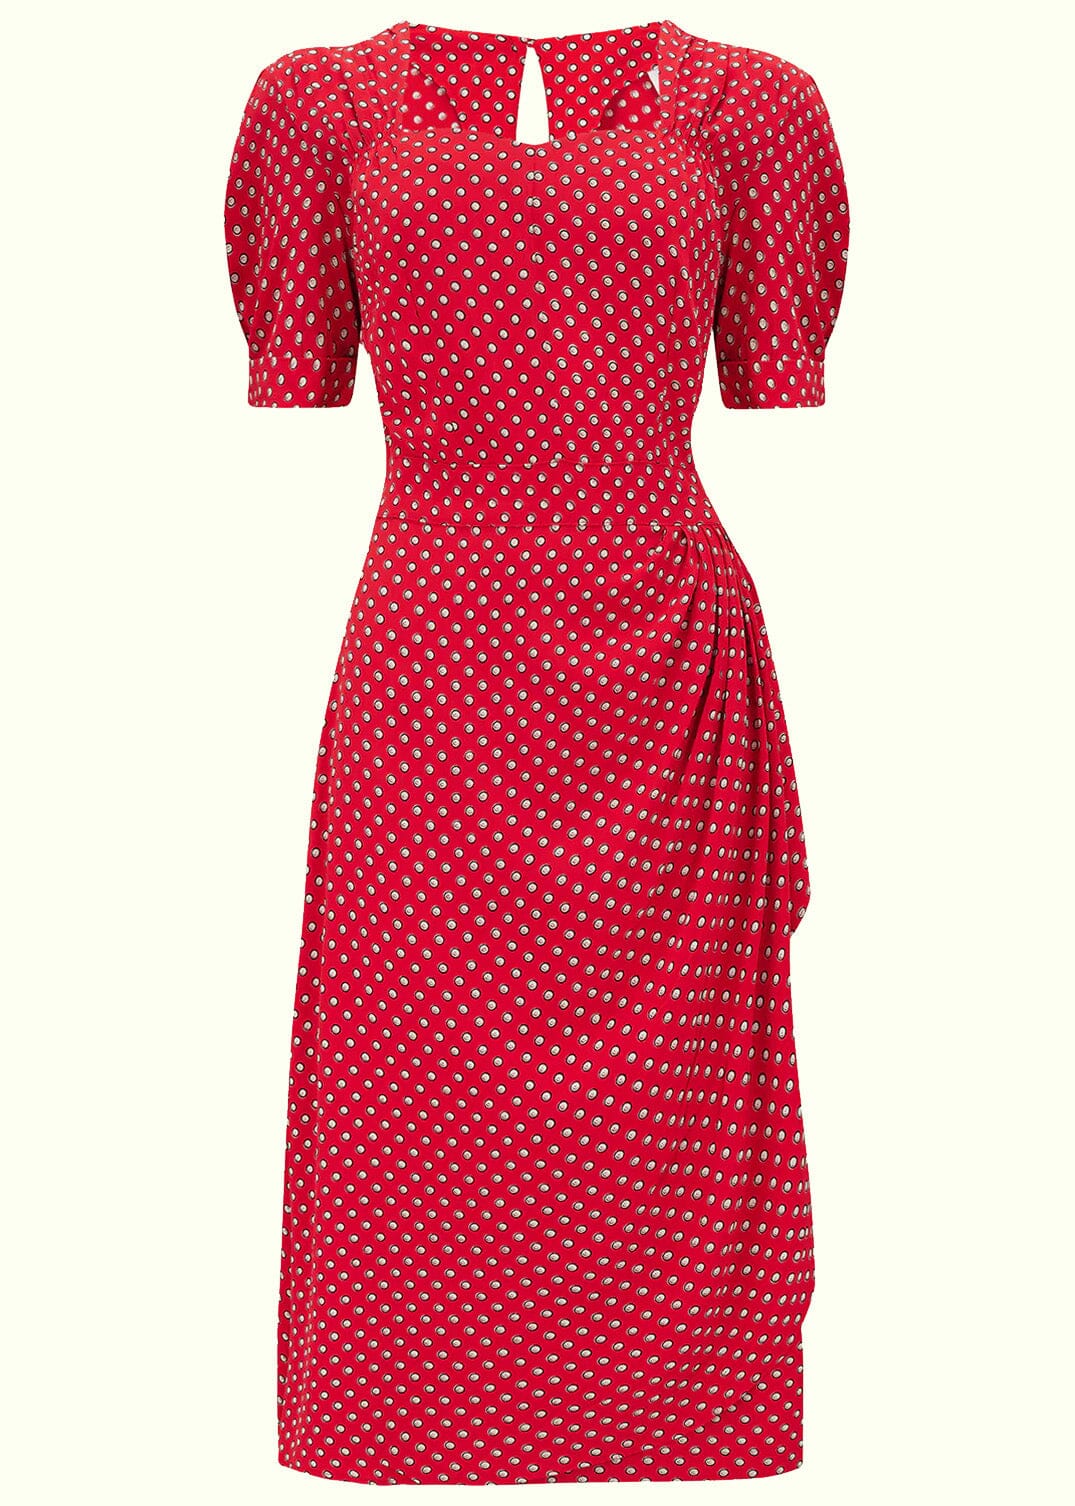 Shelly kjole i 40er stil prikker fra Bloomsbury